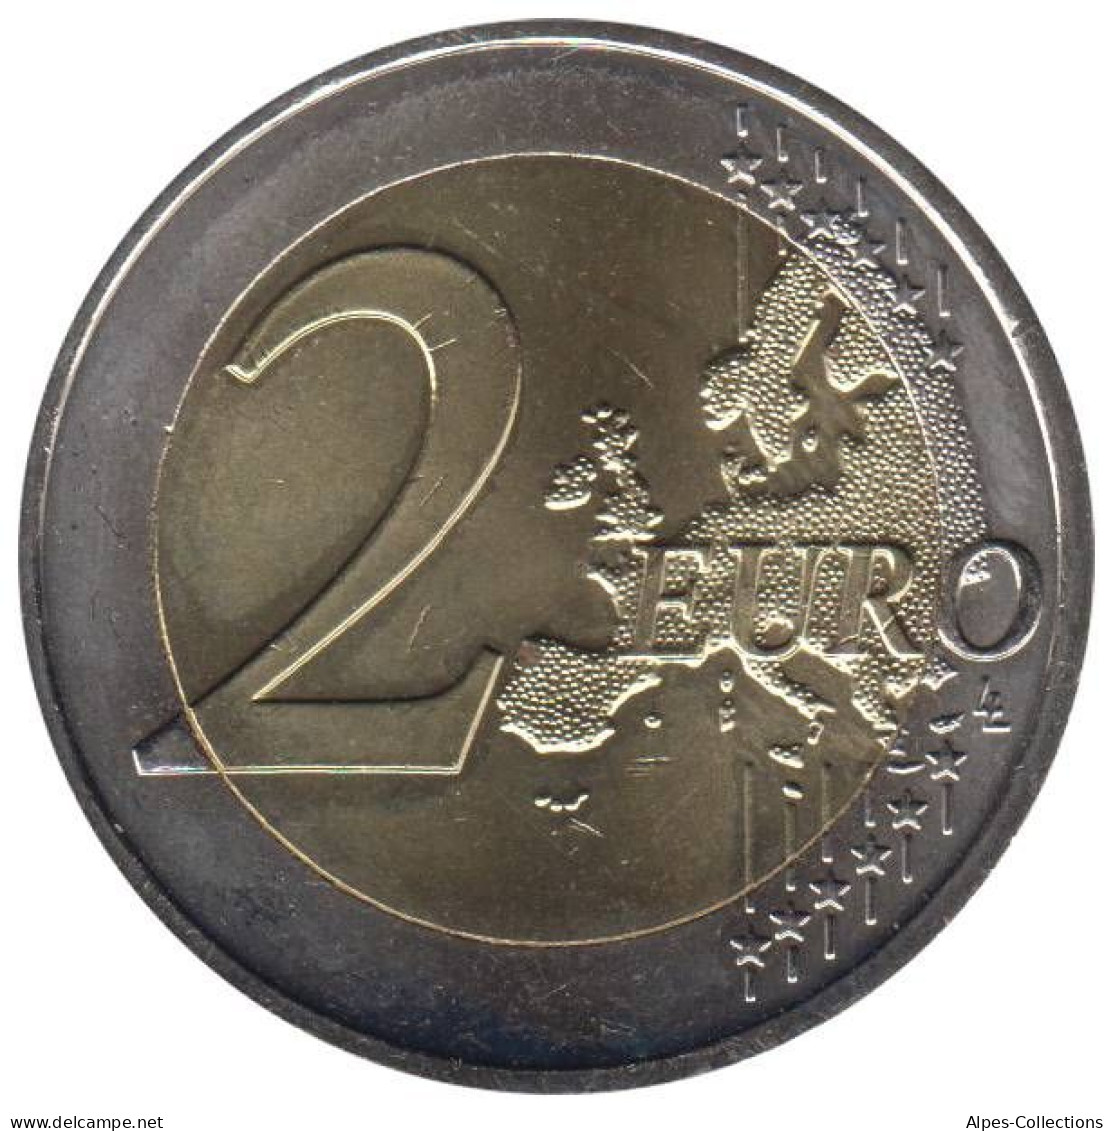 AU20009.1 - AUTRICHE - 2 Euros Commémo. 10 Ans De L'UEM - 2009 - Autriche